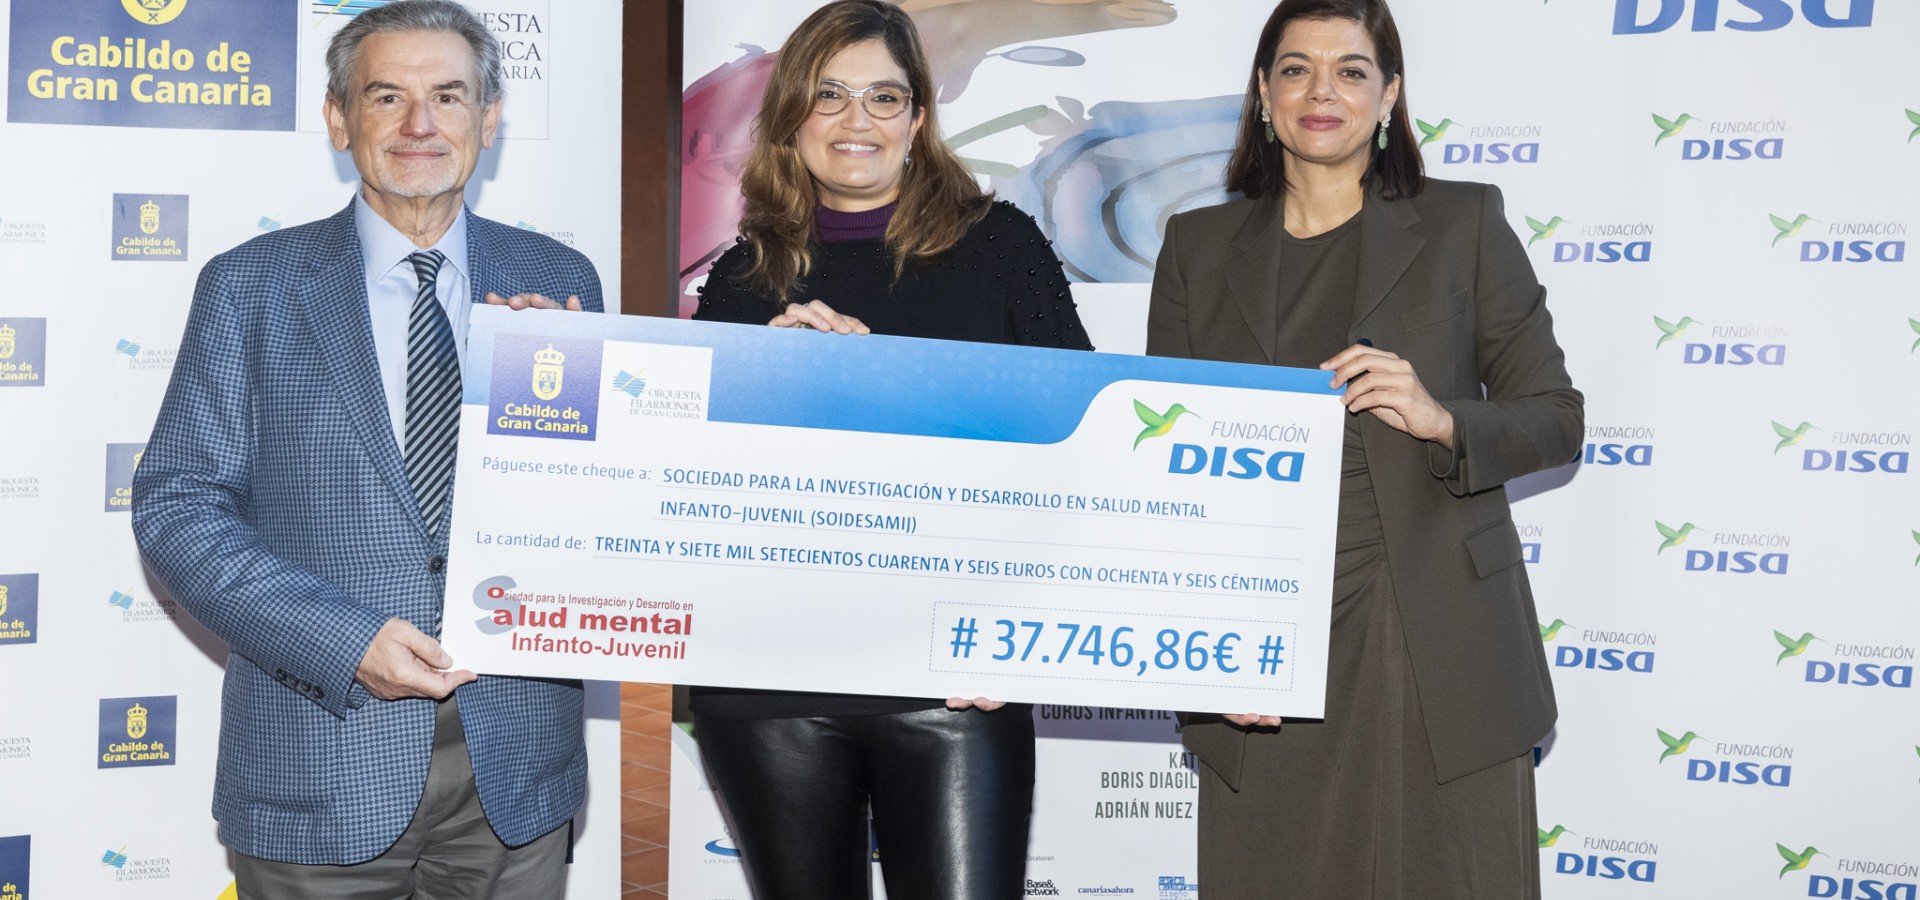 La Orquesta Filarmónica de Gran Canaria y la Fundación DISA entregan un cheque por valor de 37.746,86 euros a la Sociedad para la Investigación y Desarrollo en Salud Mental Infanto-Juvenil